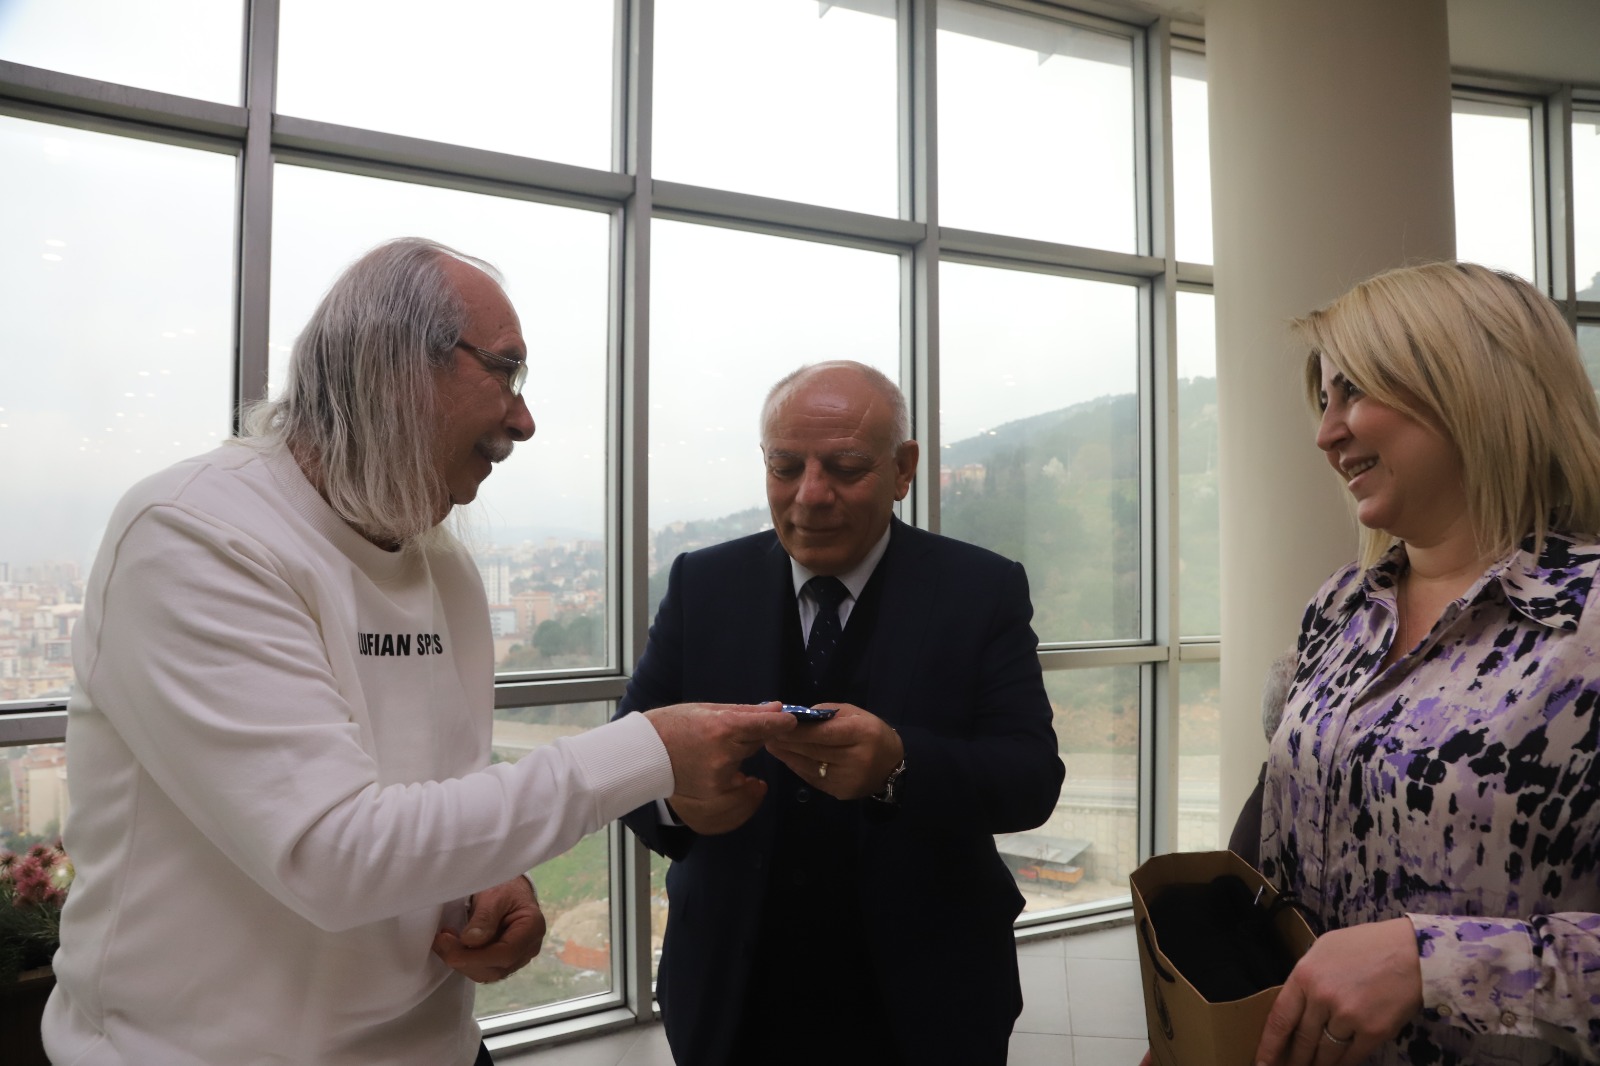 Kartal Belediyesi Yaşlılara Saygı Haftası’nda huzurevi sakinlerini unutmadı